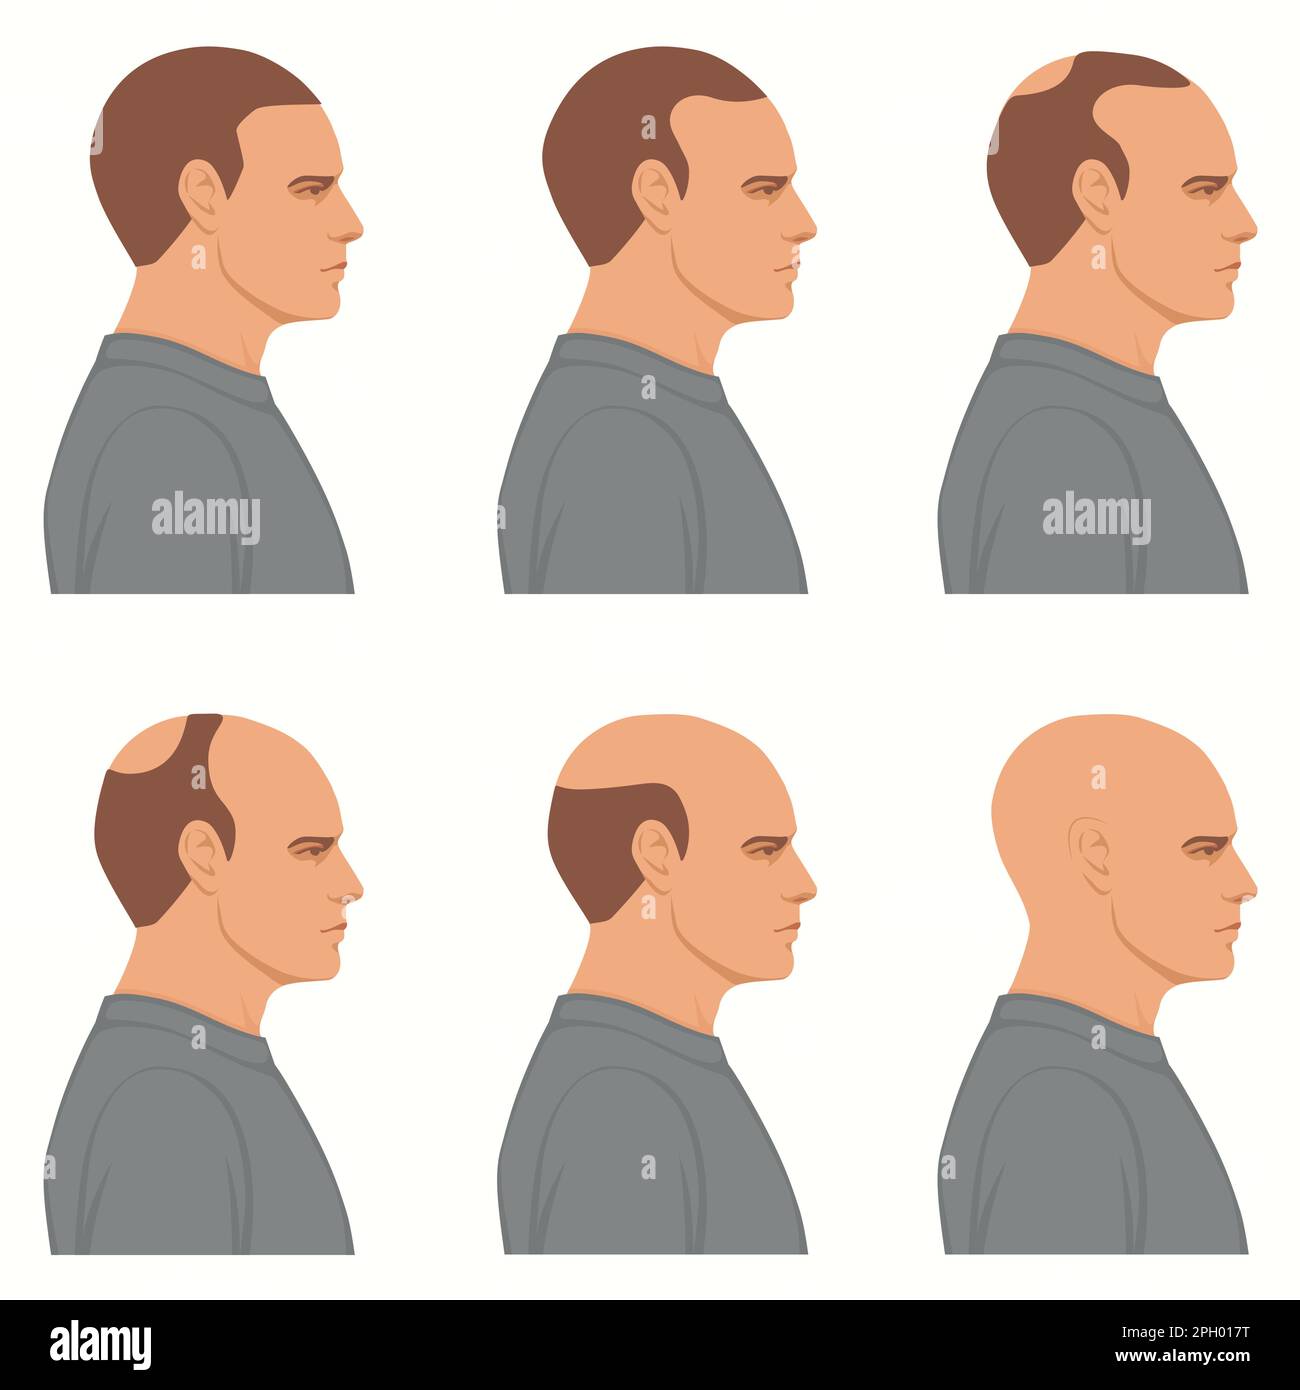 Haarverluststadien Vektor isoliert. Die männliche Alopezie. Satz des Glättungsprozesses. Haarlose Männerköpfe, Seitenansicht. Stock Vektor